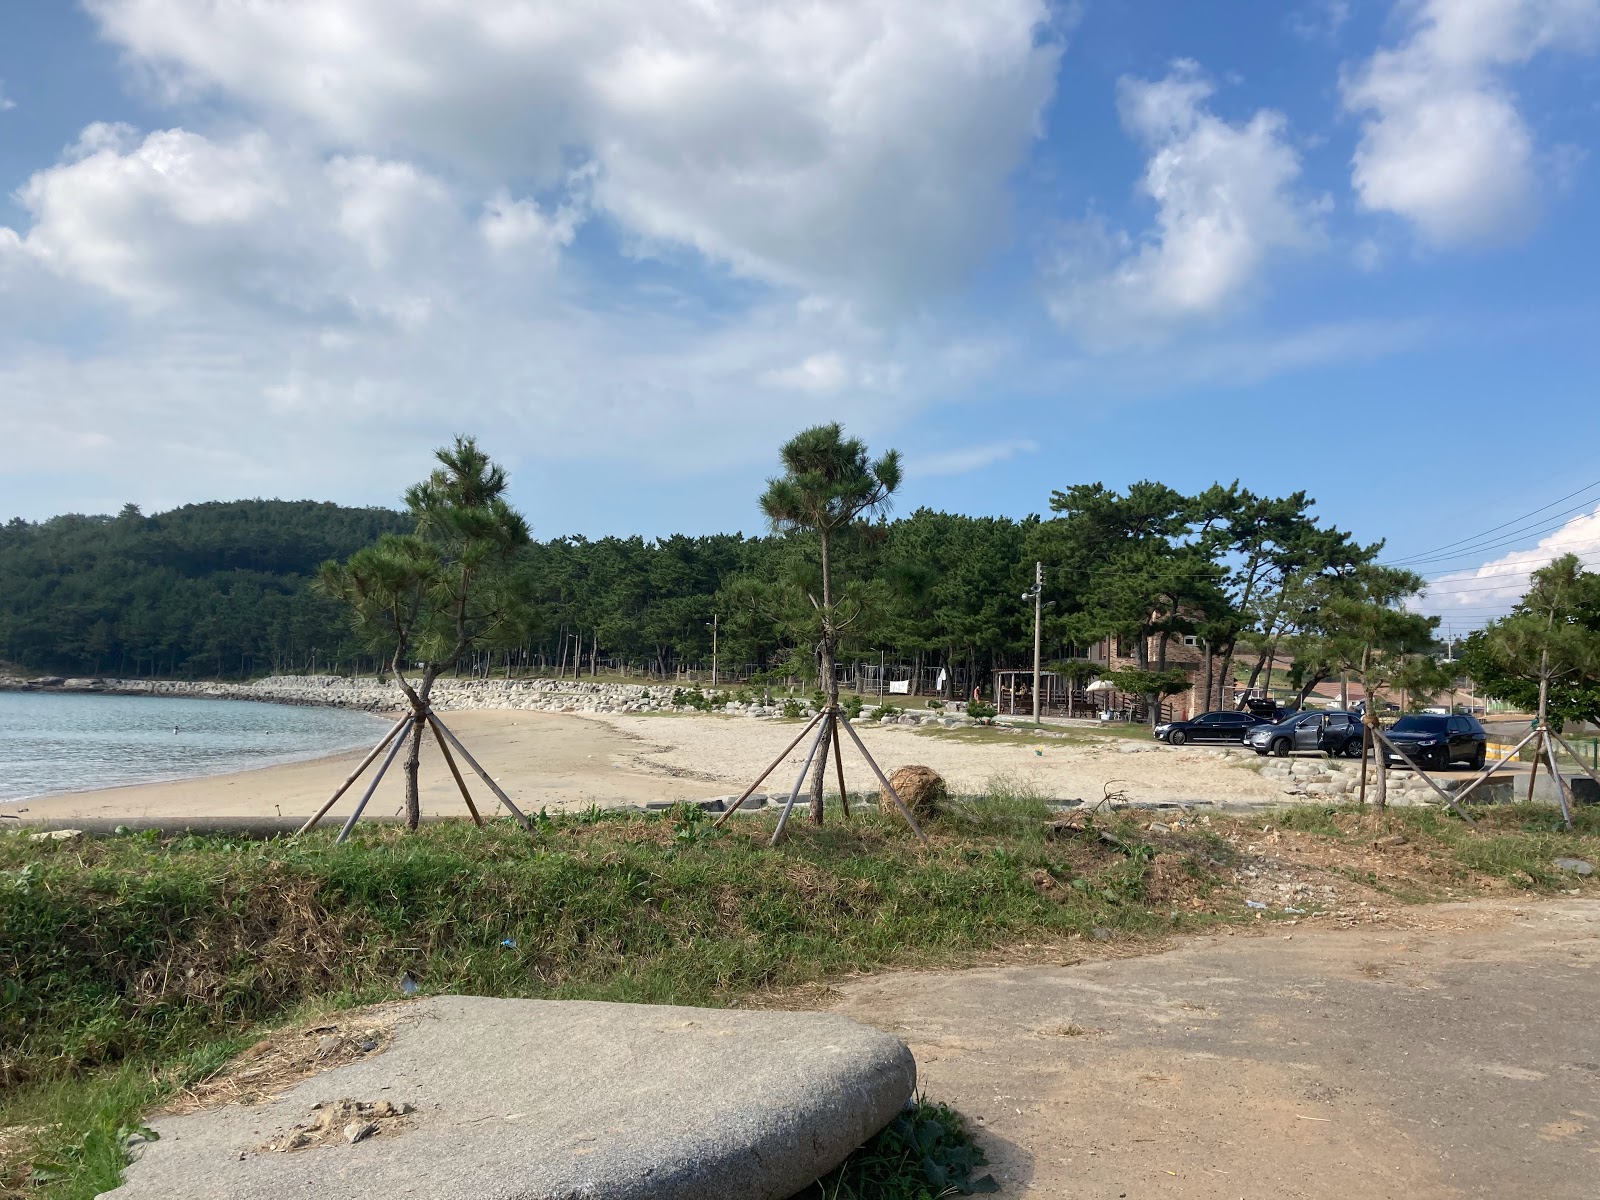 Yeonyeon Beach'in fotoğrafı geniş ile birlikte